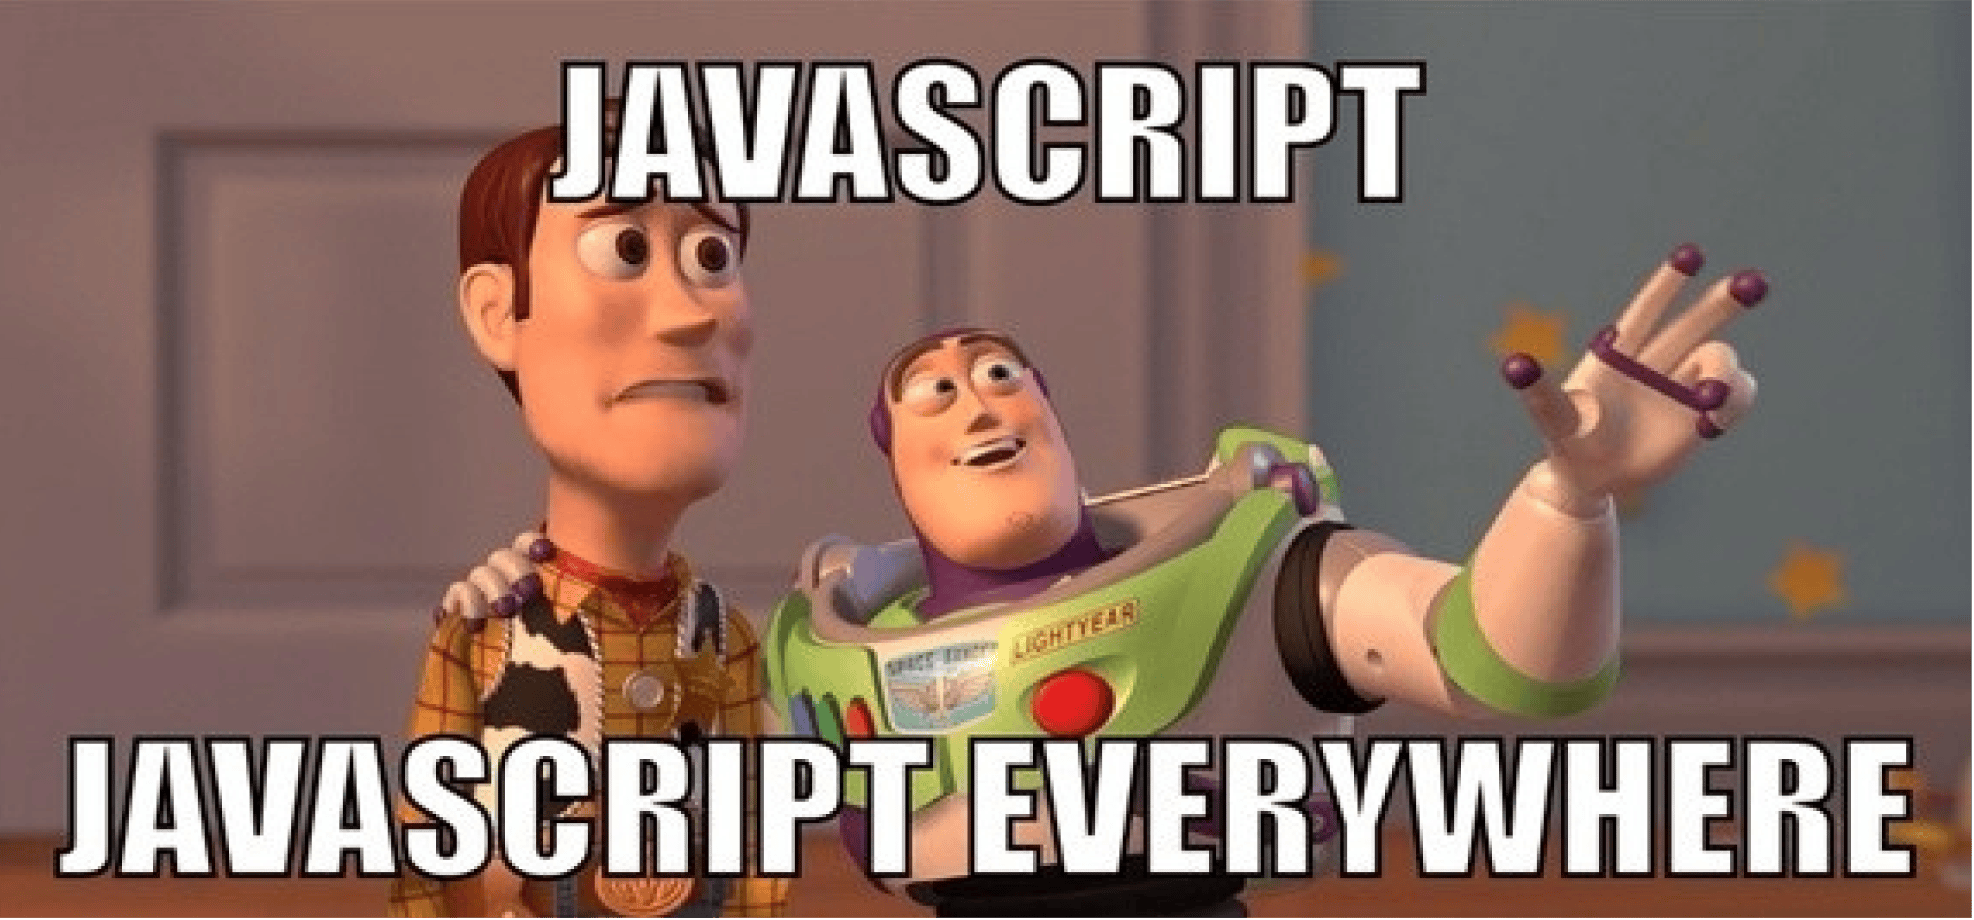 Why Use JavaScript?